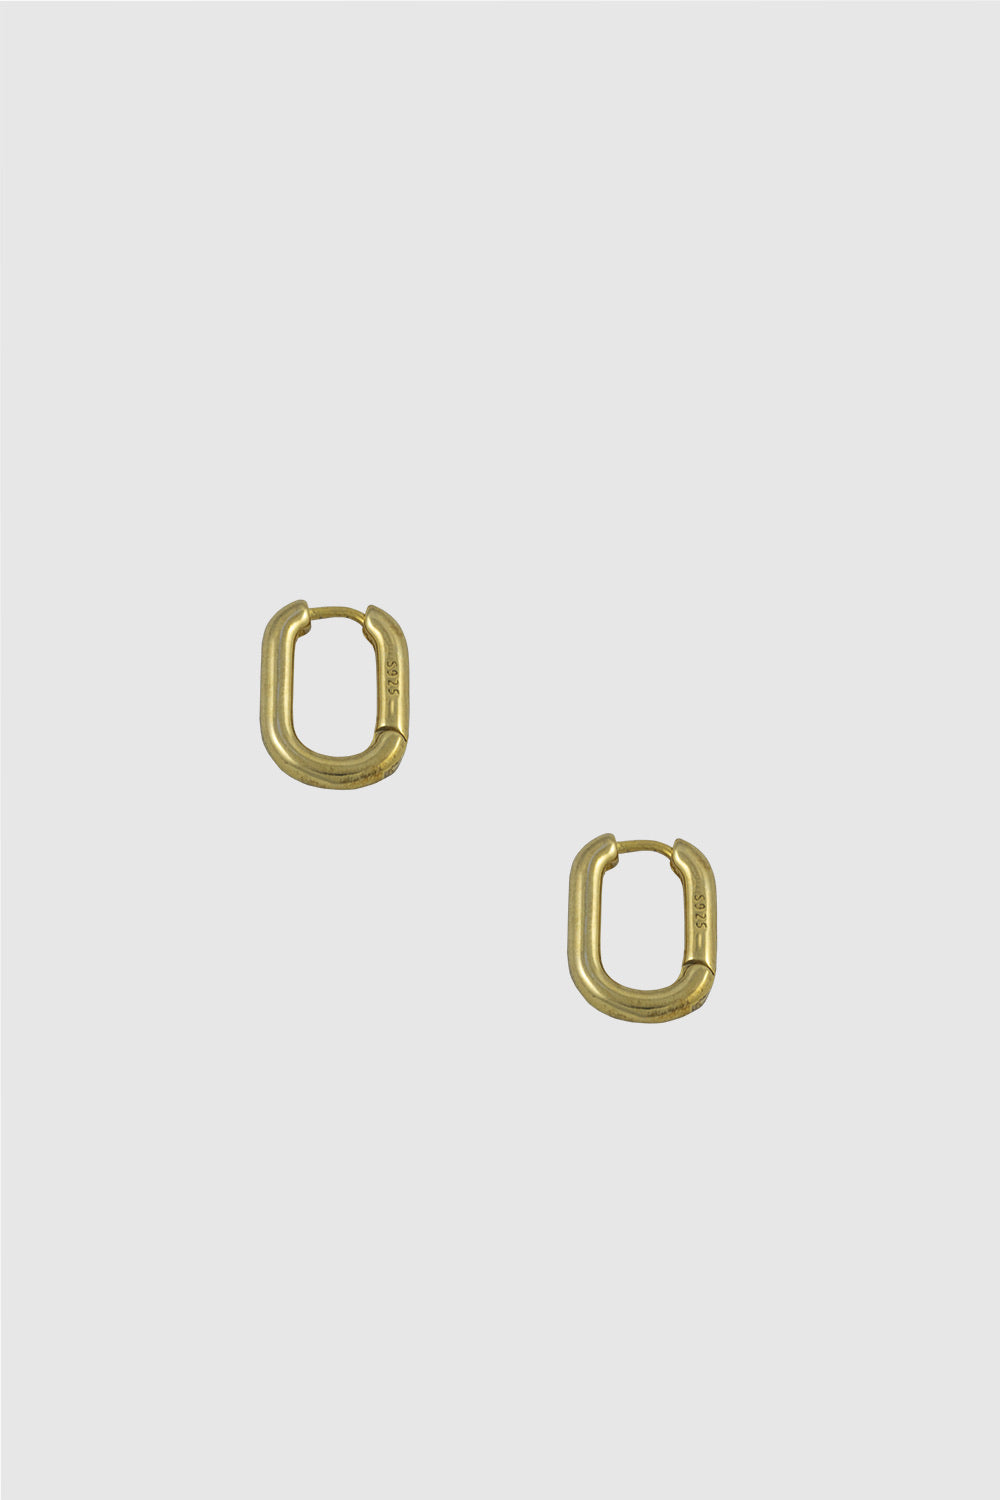 Mini Oval Link Gold Earrings